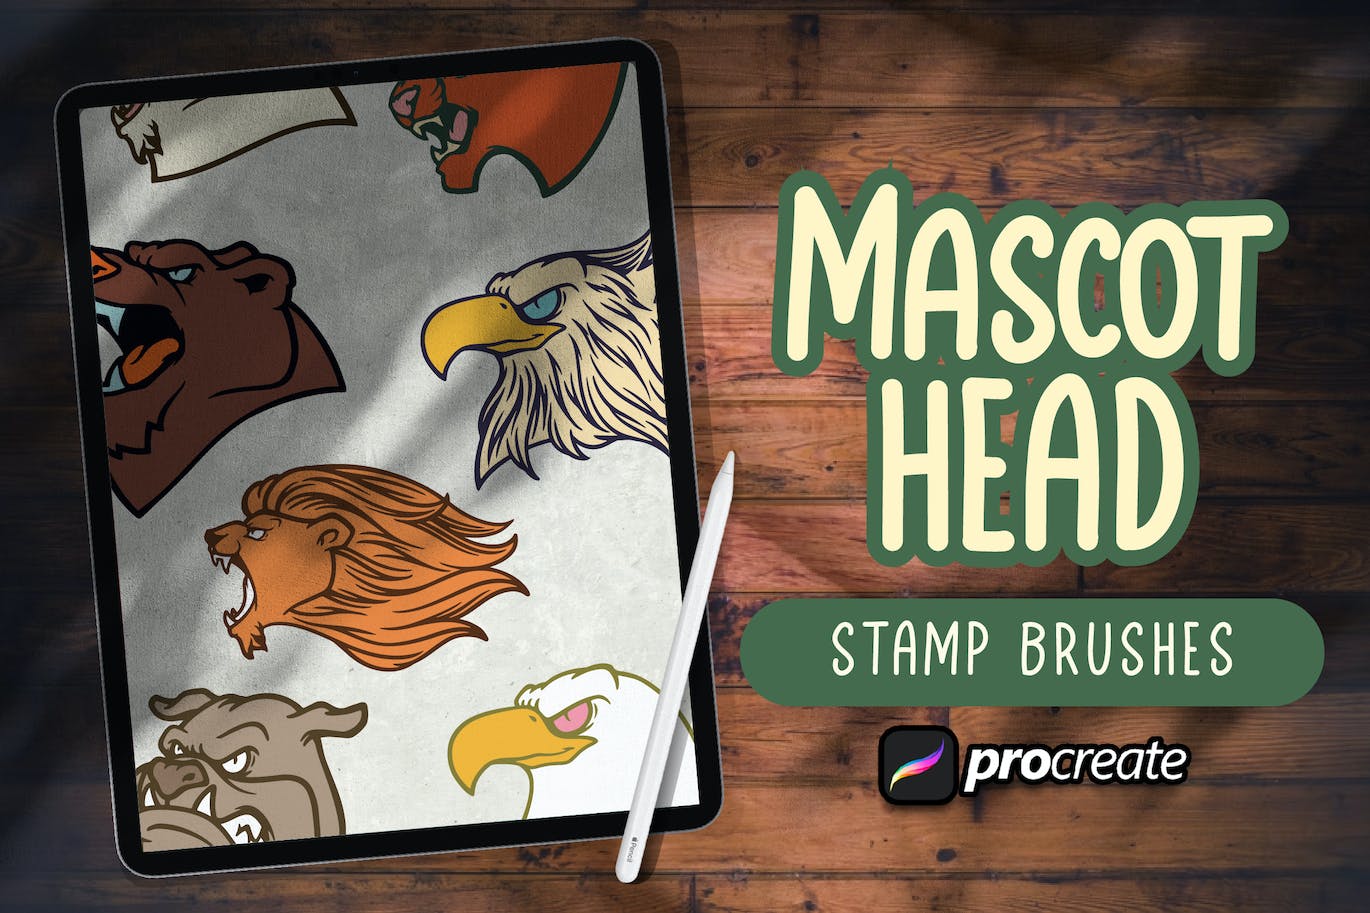 吉祥物头像Procreate印章绘画笔刷素材 Mascot Head Stamp Brush Procreate 笔刷资源 第2张